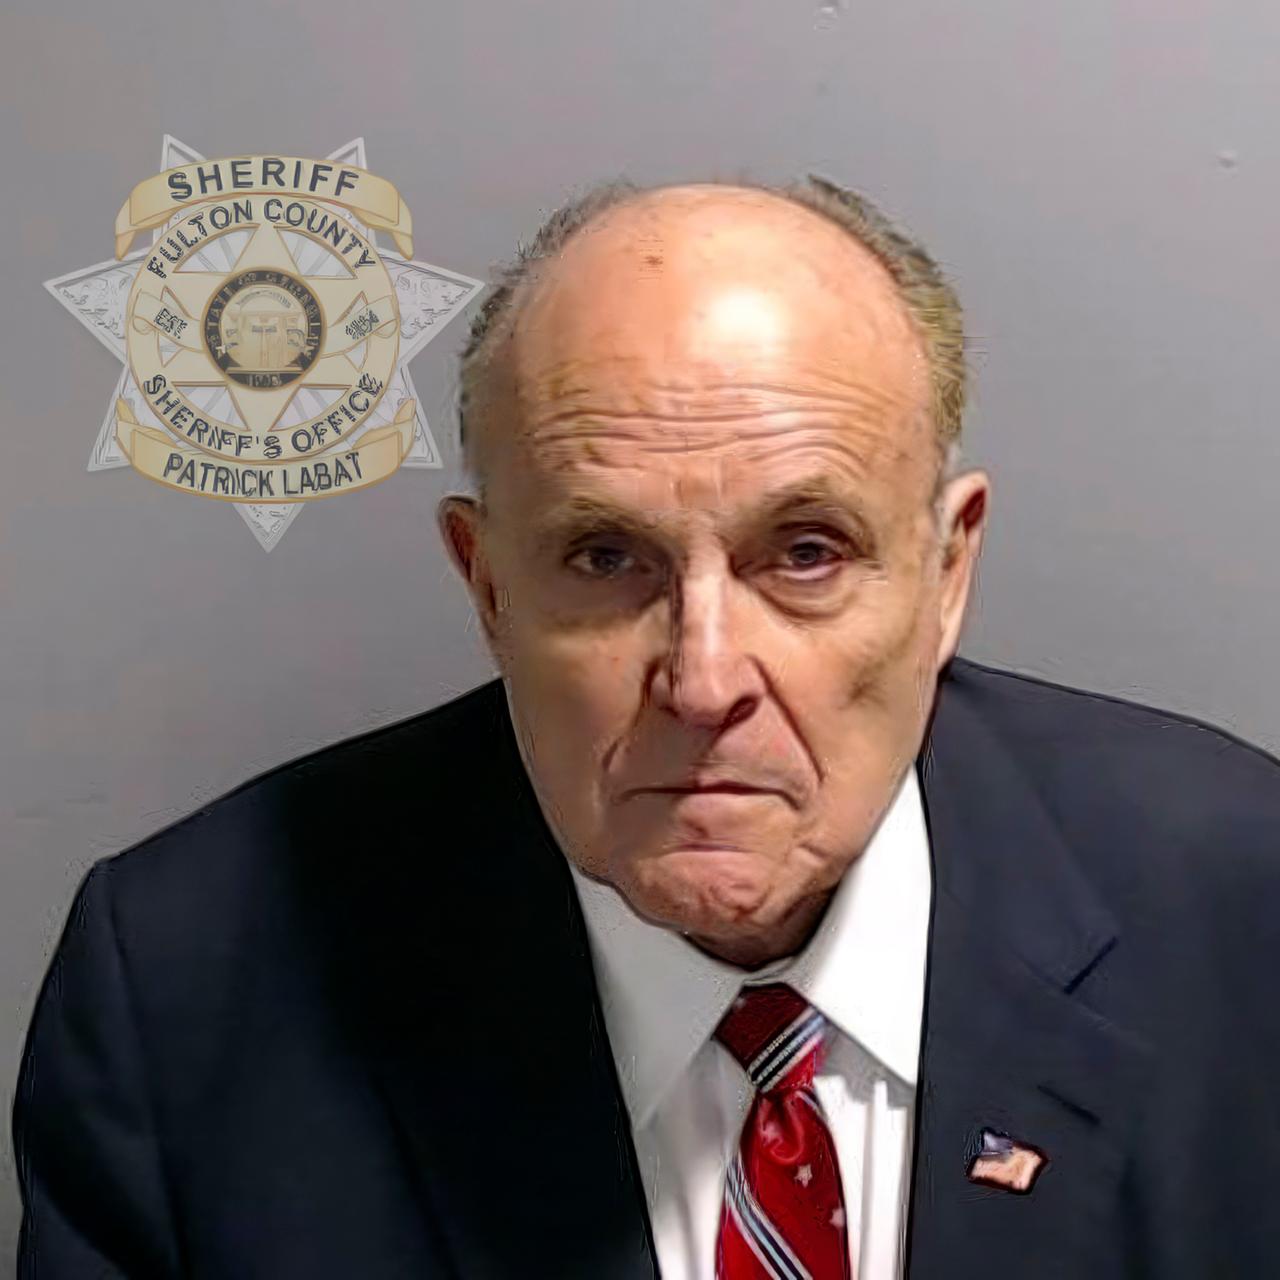 Dieses vom Fulton County Sheriff's Office zur Verfügung gestellte Foto zeigt Rudy Giuliani, nachdem er sich den Behörden gestellt hat.